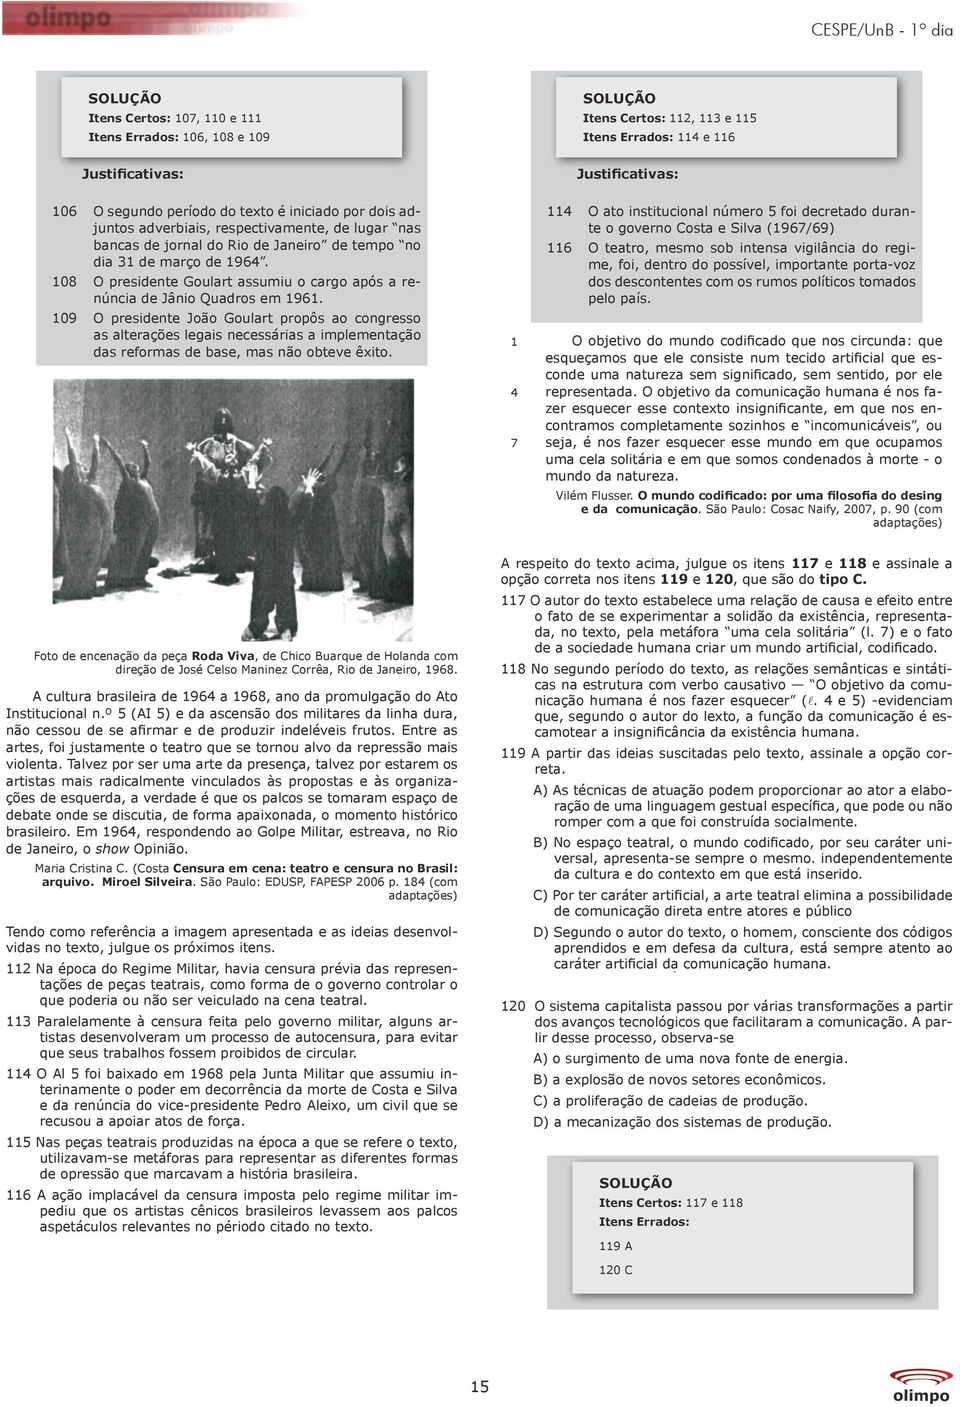 09 O presidente João Goulart propôs ao congresso as alterações legais necessárias a implementação das reformas de base, mas não obteve êxito.